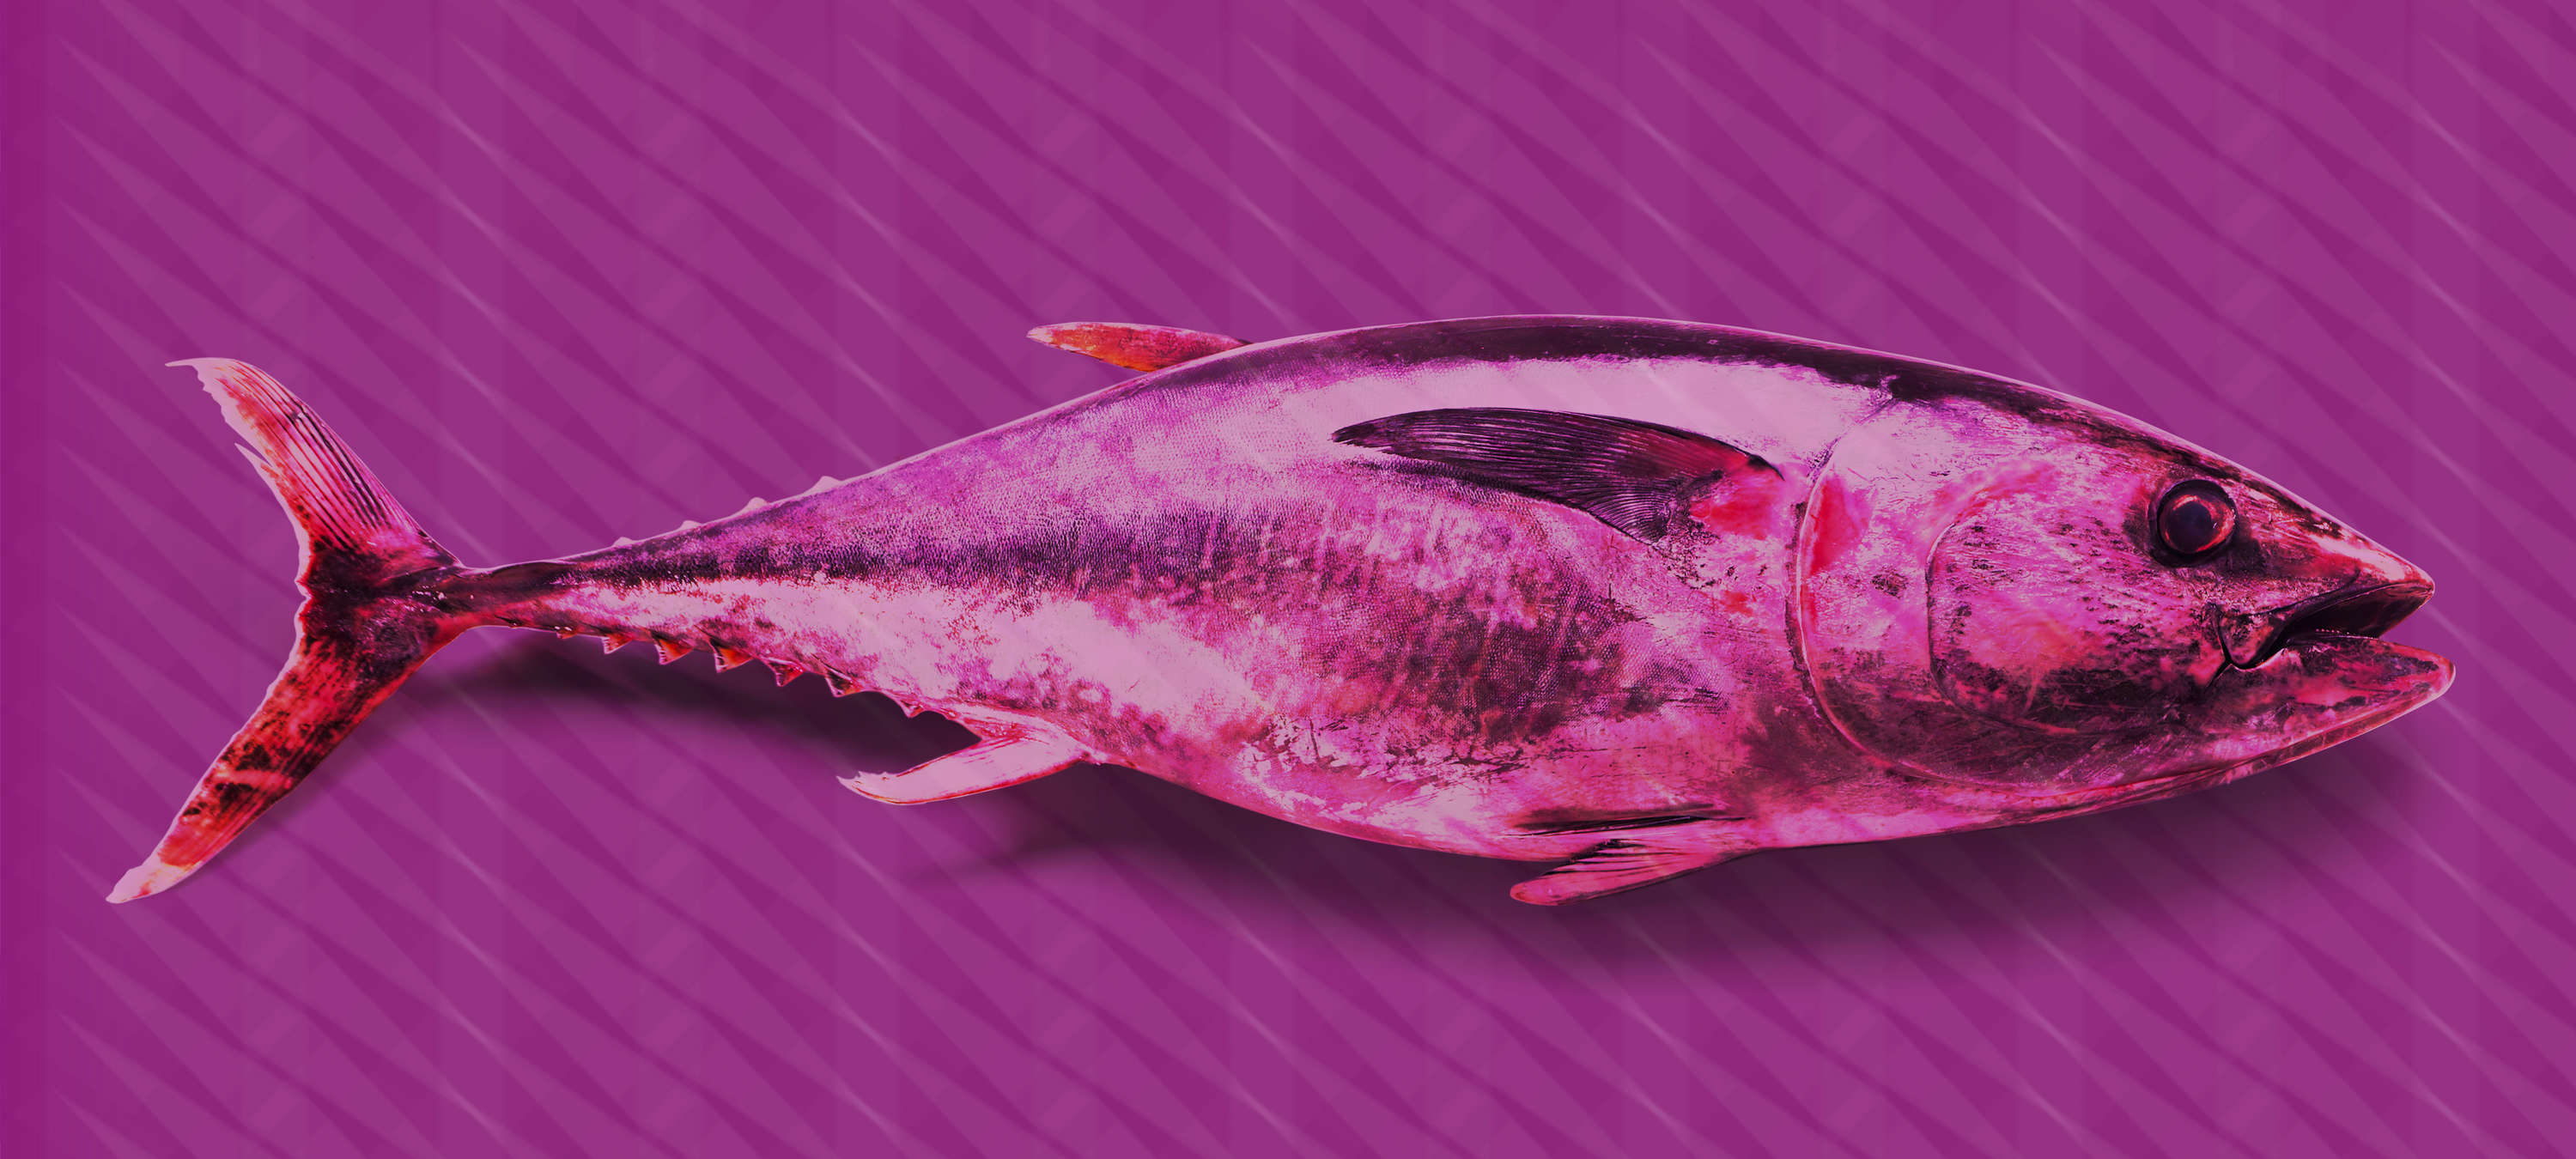             Thunfisch-Fototapete im Pop Art Stil – Violett, Rosa, Rot – Mattes Glattvlies
        